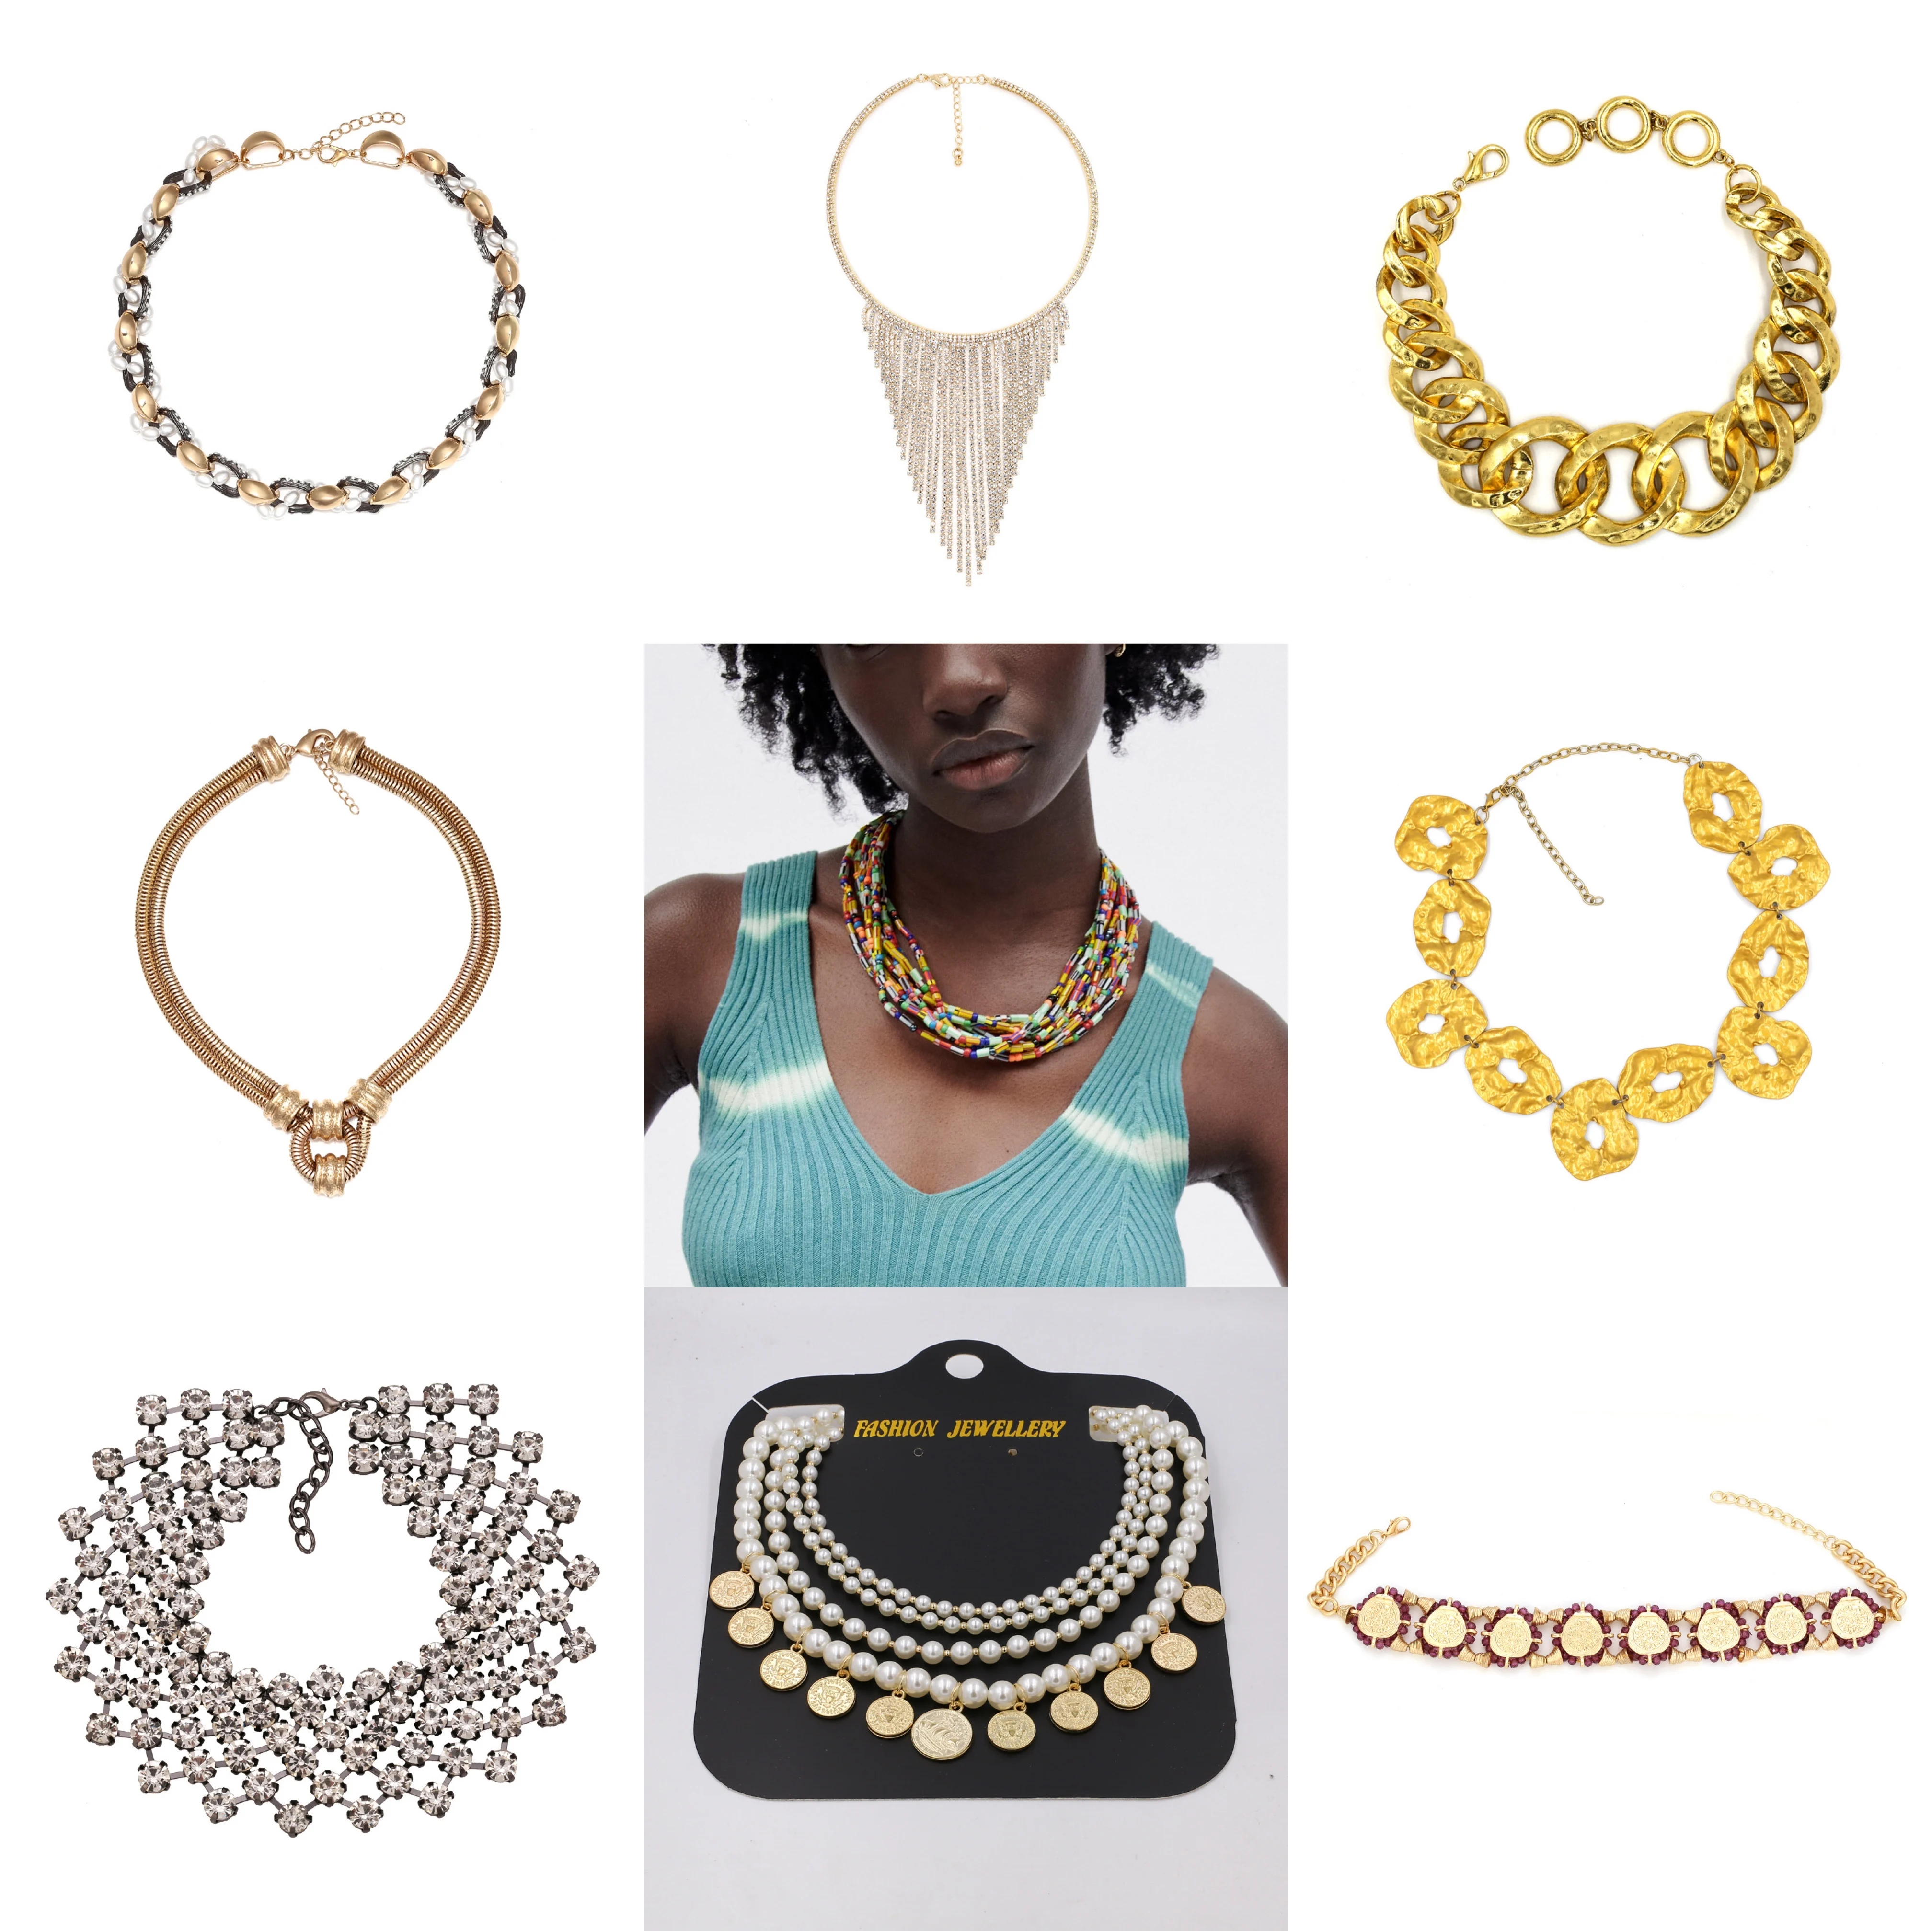 

Женское многослойное ожерелье ZA, винтажное ожерелье с радужными бусинами из акриловой смолы в стиле бохо, этническая бижутерия для плявече...